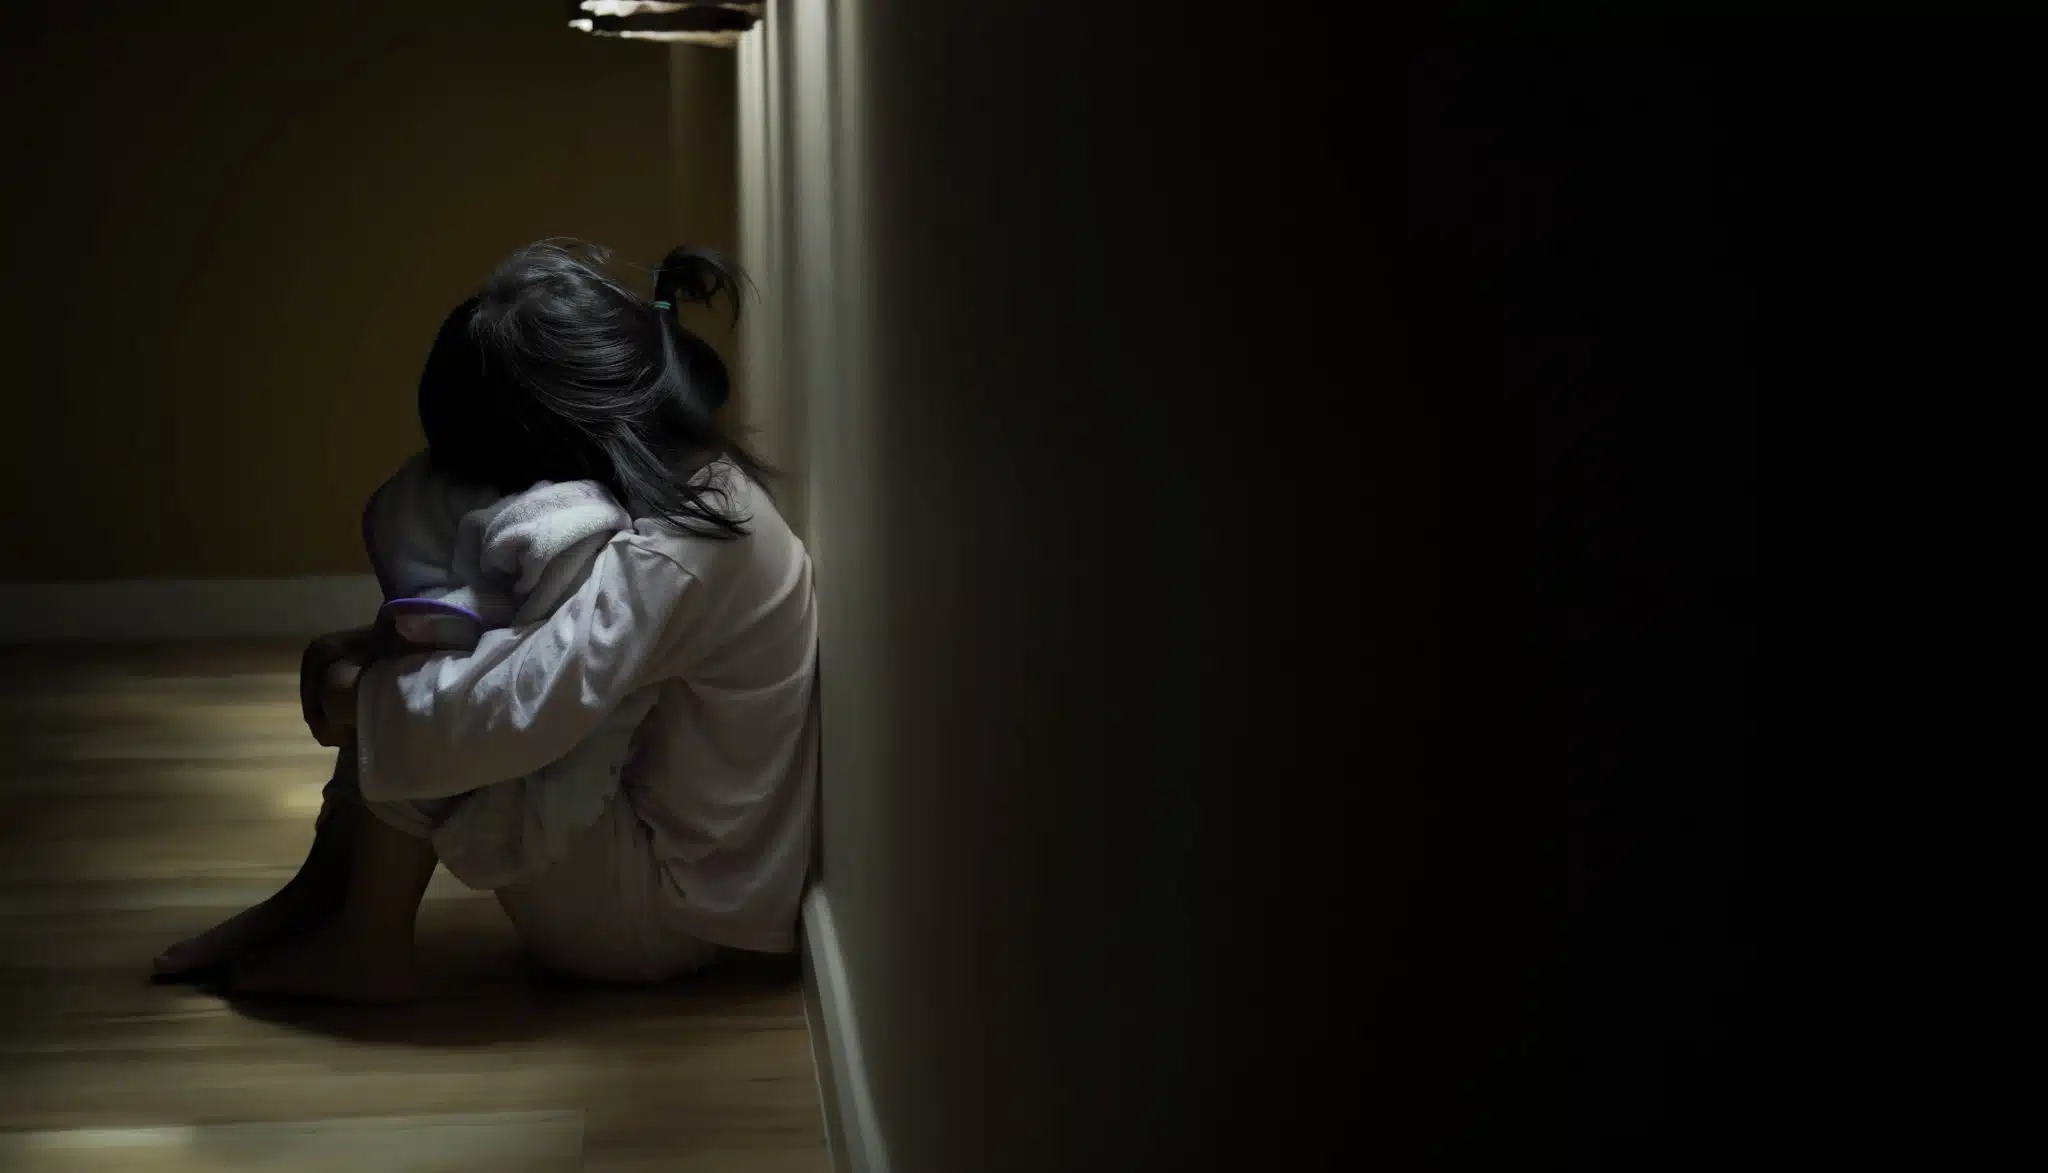 unhappy little girl sitting in a dark hallway